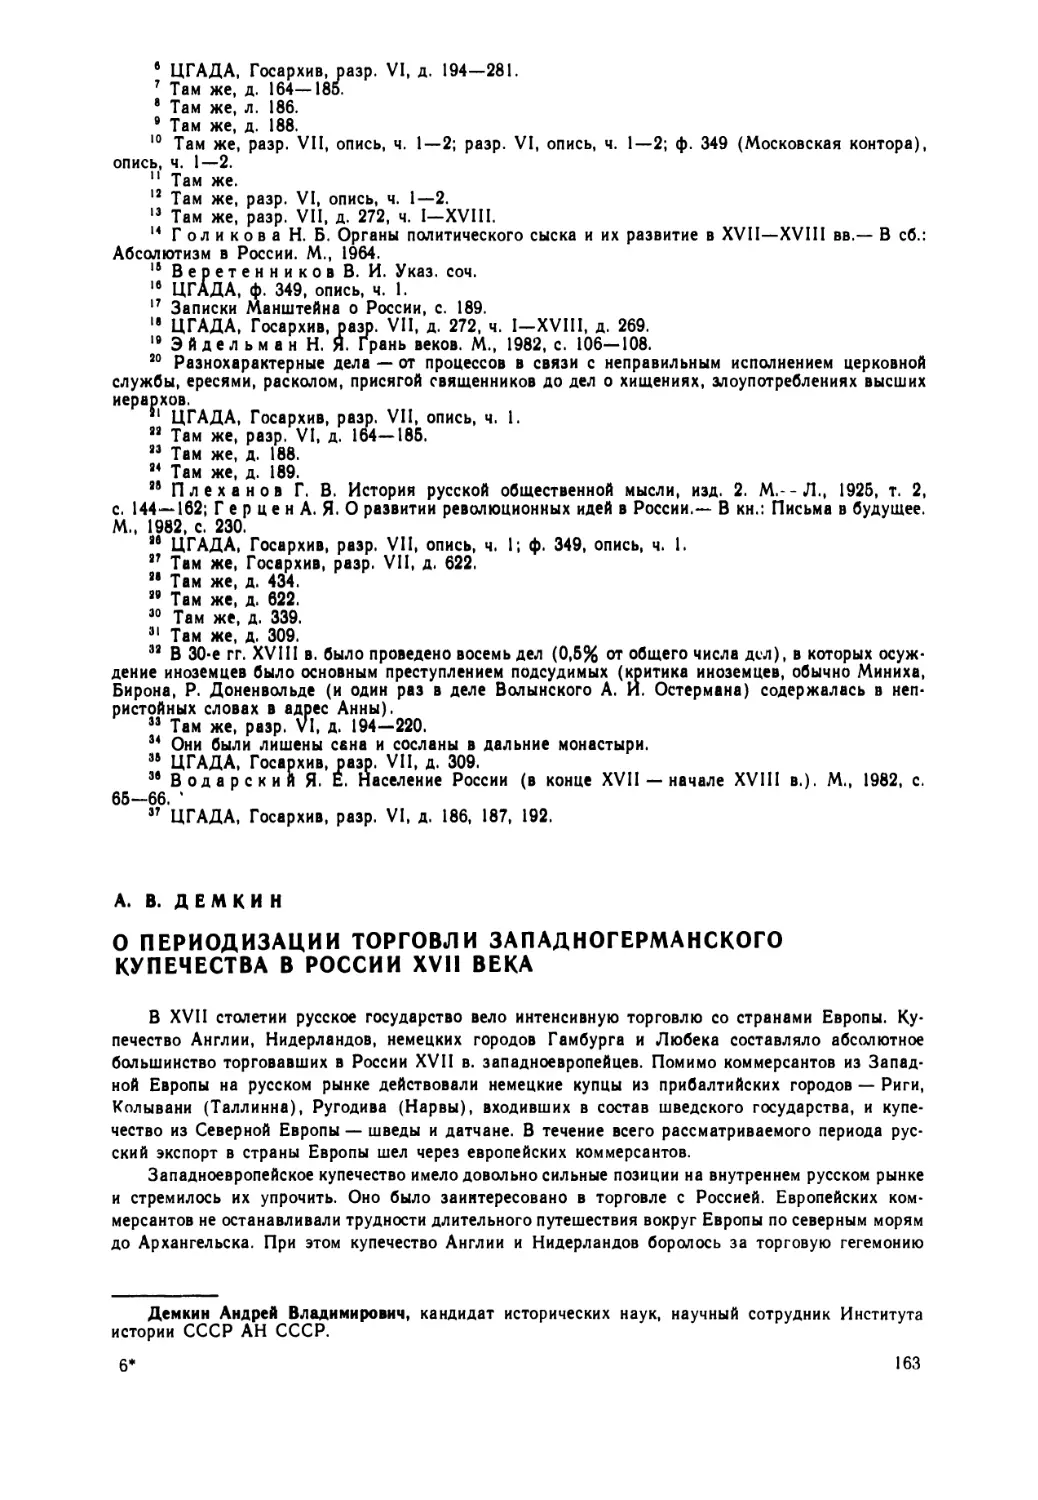 Демкин  А.В. —  О  периодизации  торговли  западноевропейского  купечества  в  России  XVII  века